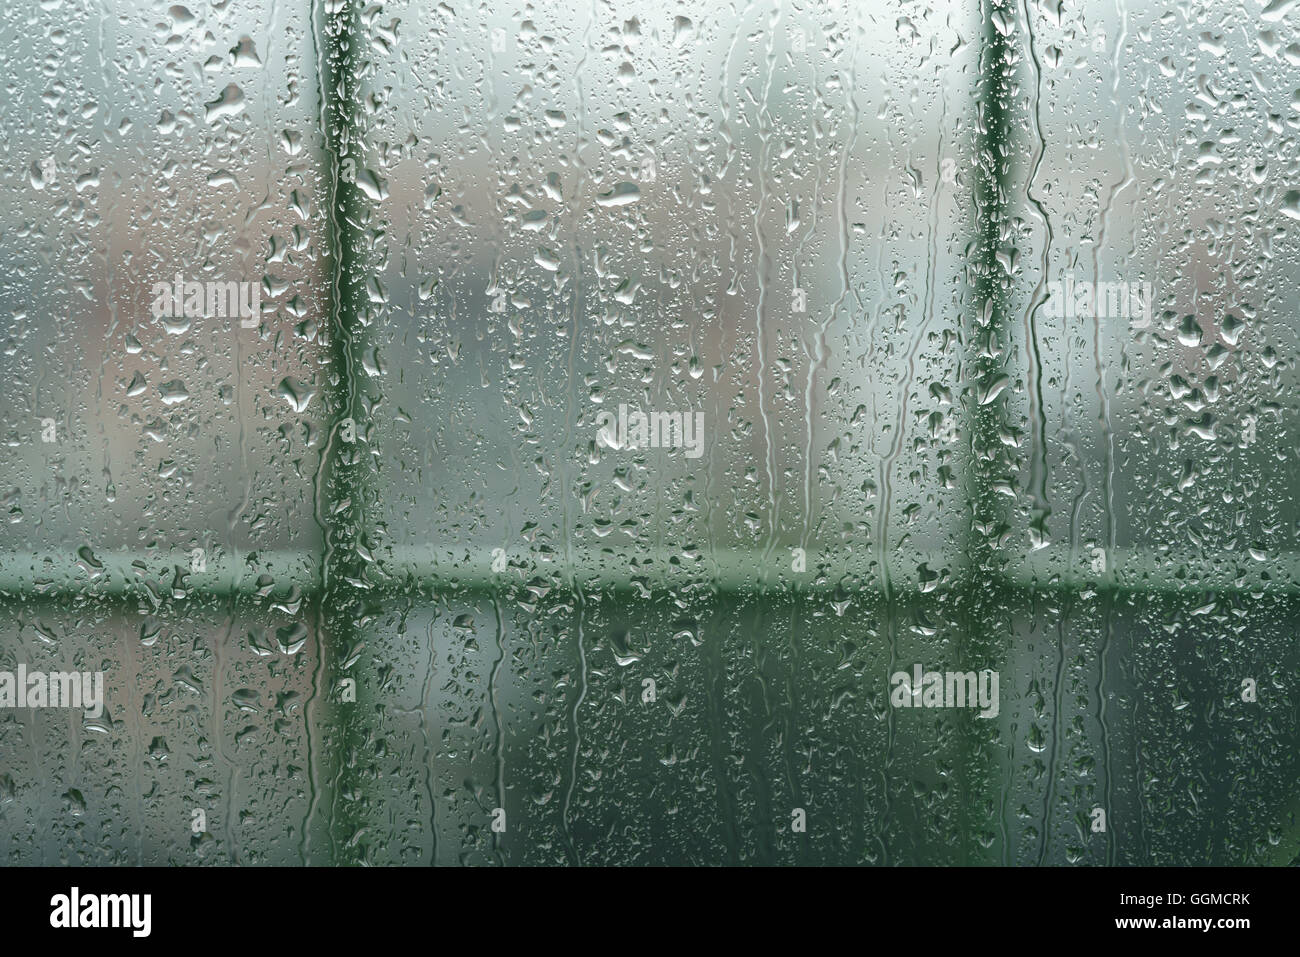 Des gouttes de pluie sur les vitres en haute résolution Banque D'Images